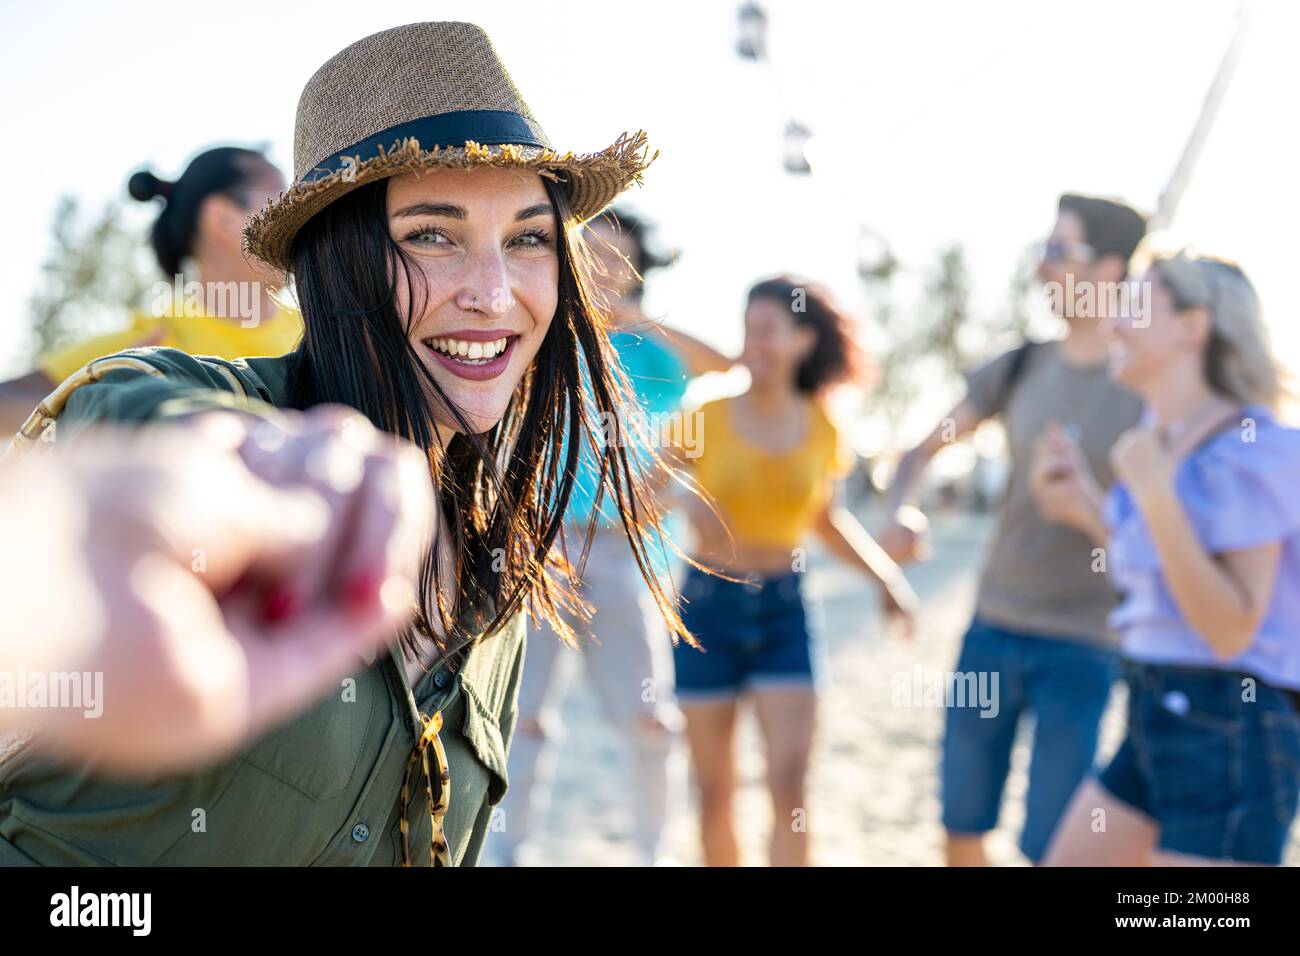 giovane bruna donna con occhi blu che invita a ballare in una festa sulla spiaggia, festival musicale internazionale con una grande folla felice di persone diverse Foto Stock